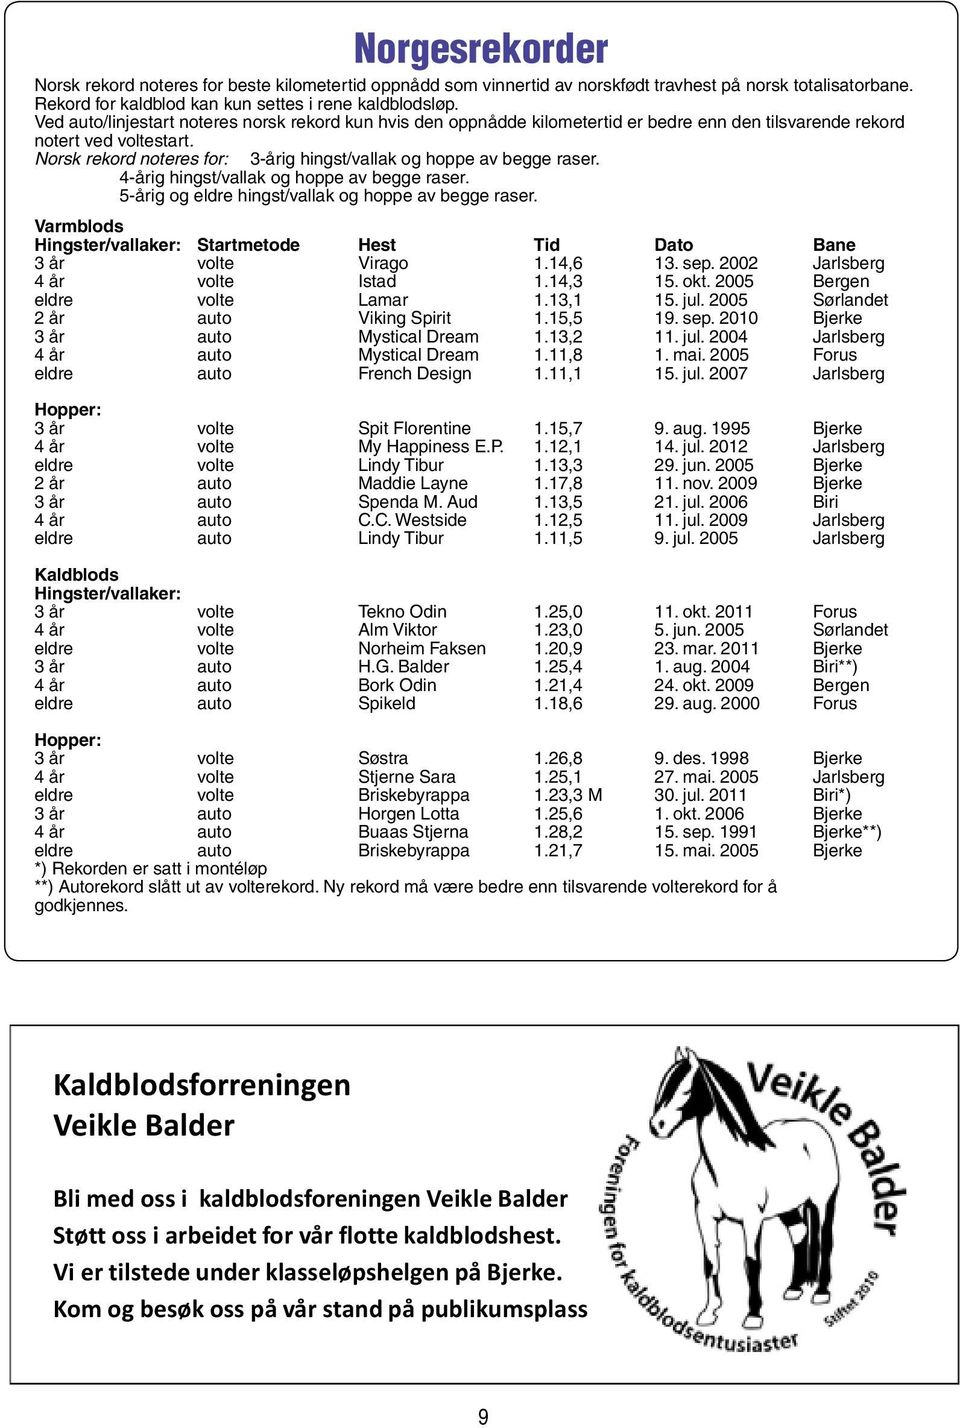 Norsk rekord noteres for: 3-årig hingst/vallak og hoppe av begge raser. 4-årig hingst/vallak og hoppe av begge raser. 5-årig og eldre hingst/vallak og hoppe av begge raser.